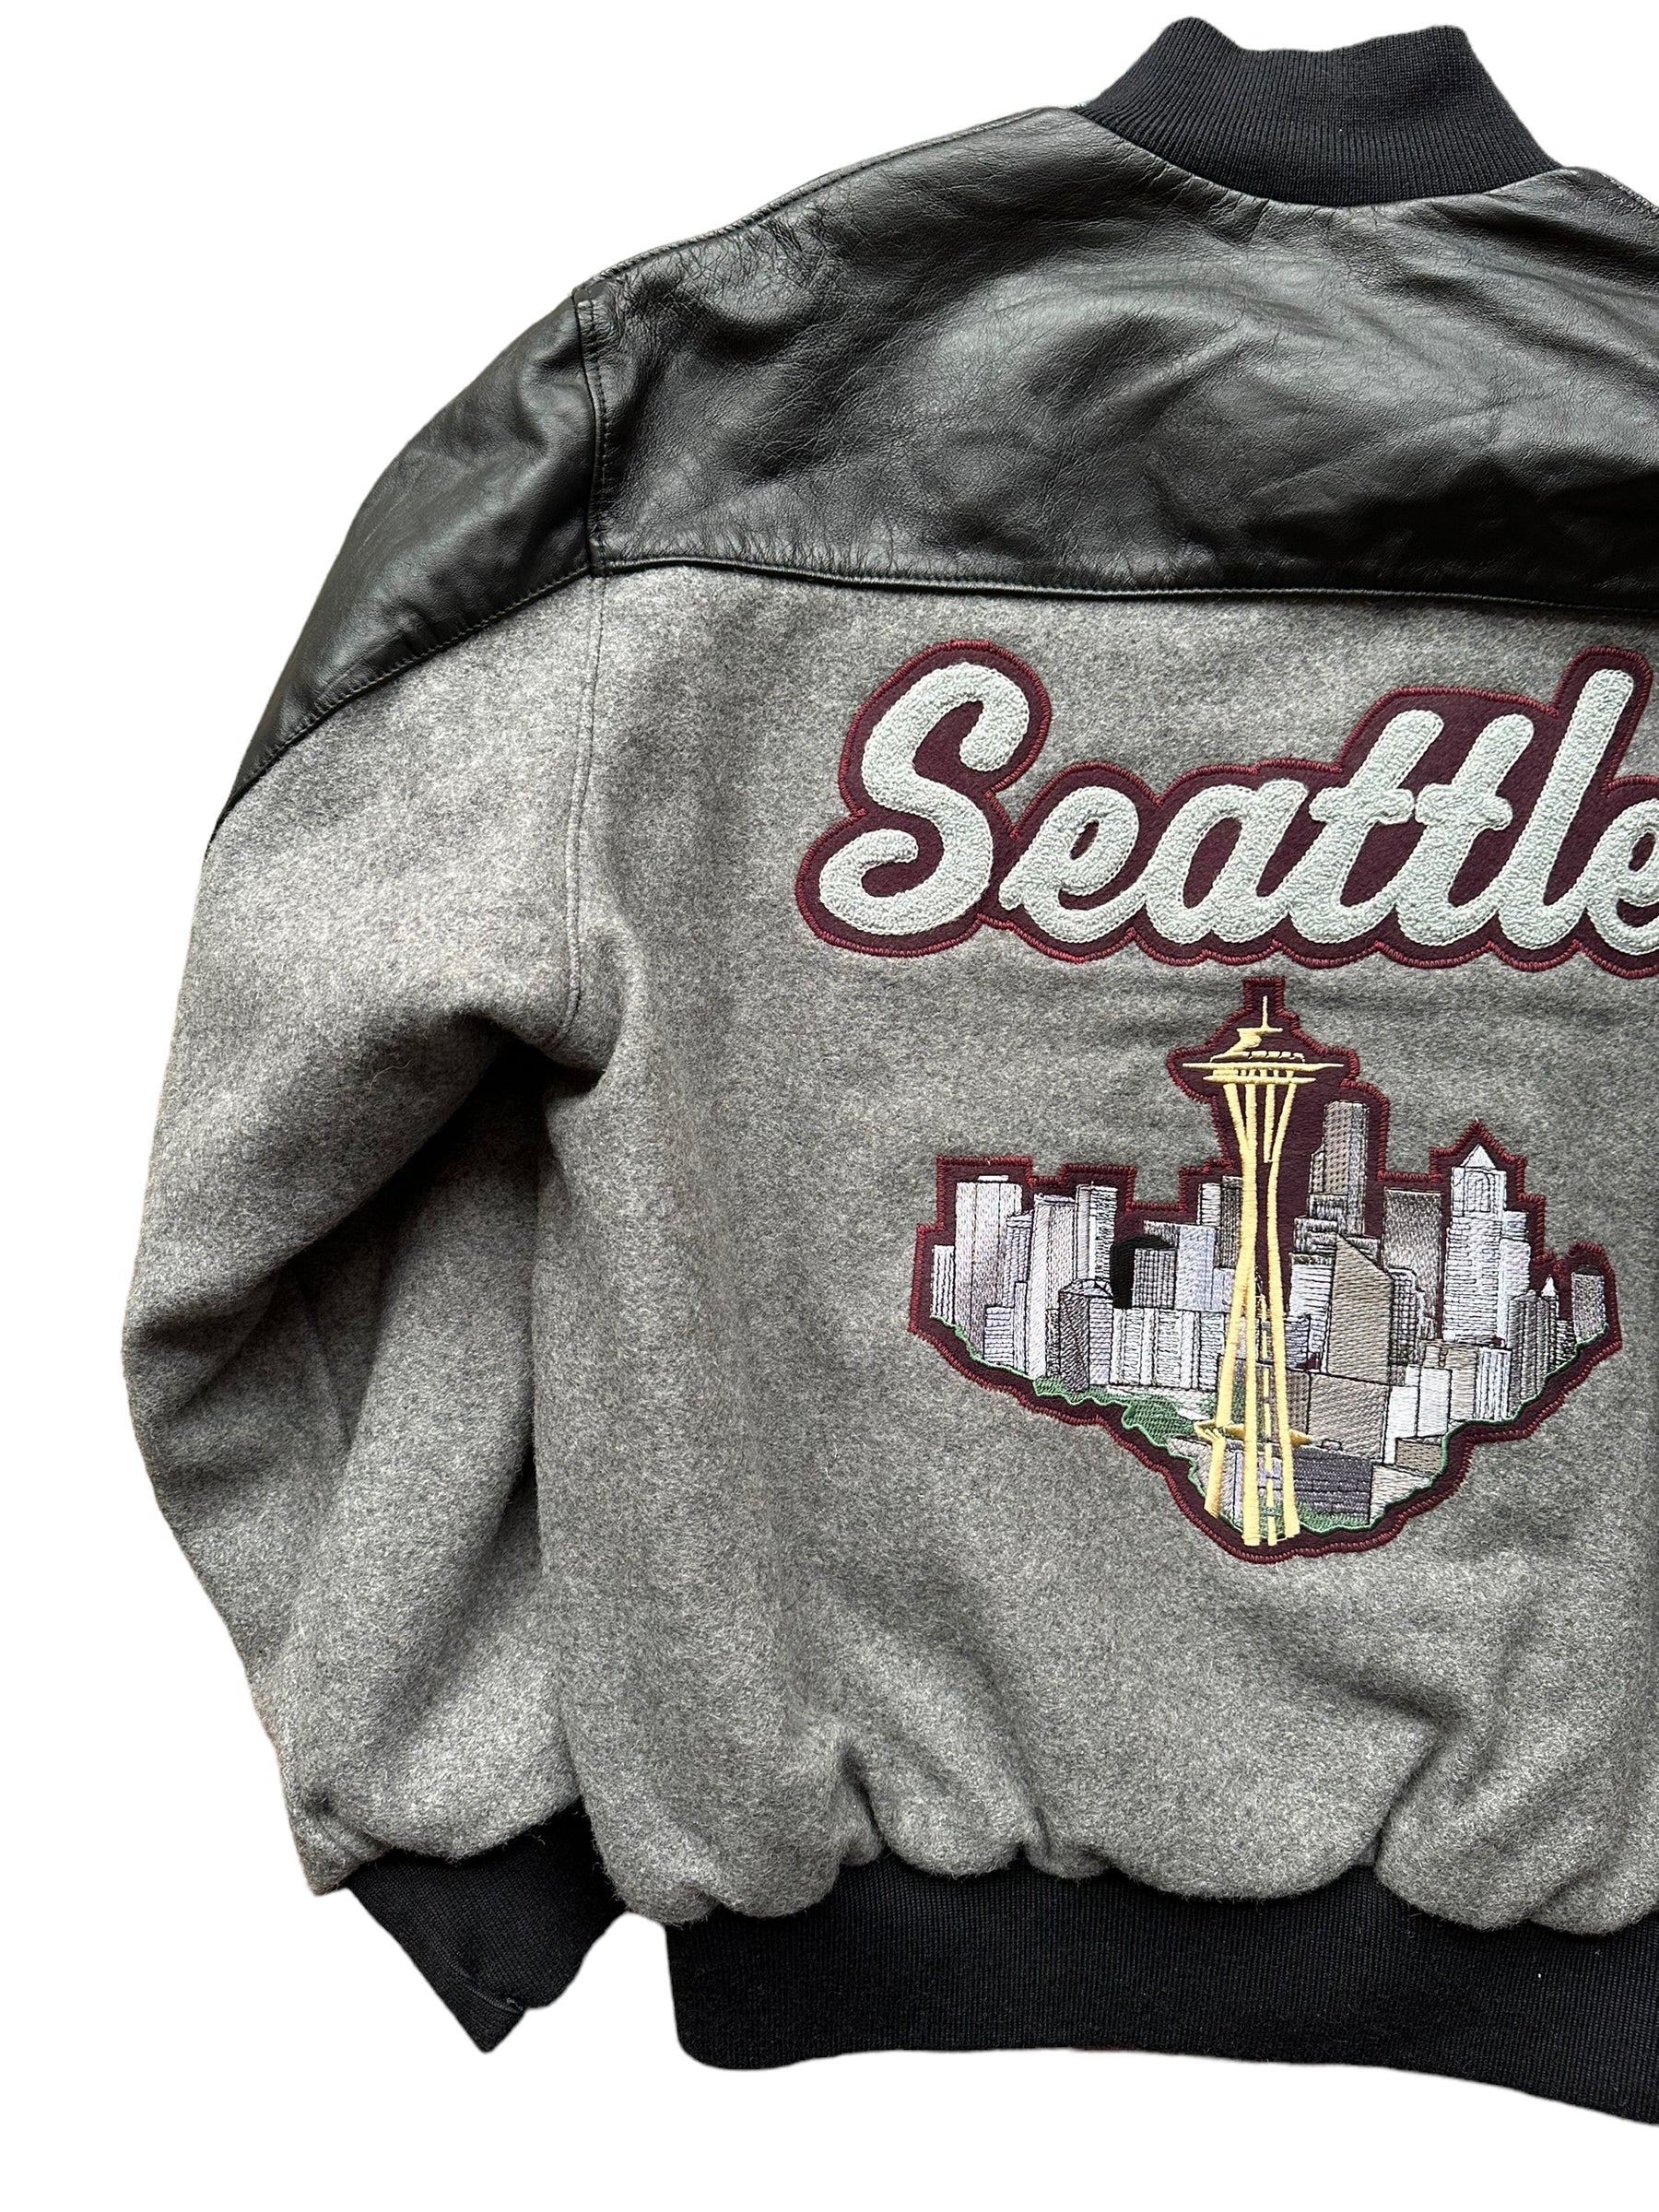 Seattle Supersonics paint splash coat - M / L - VintageSportsGear